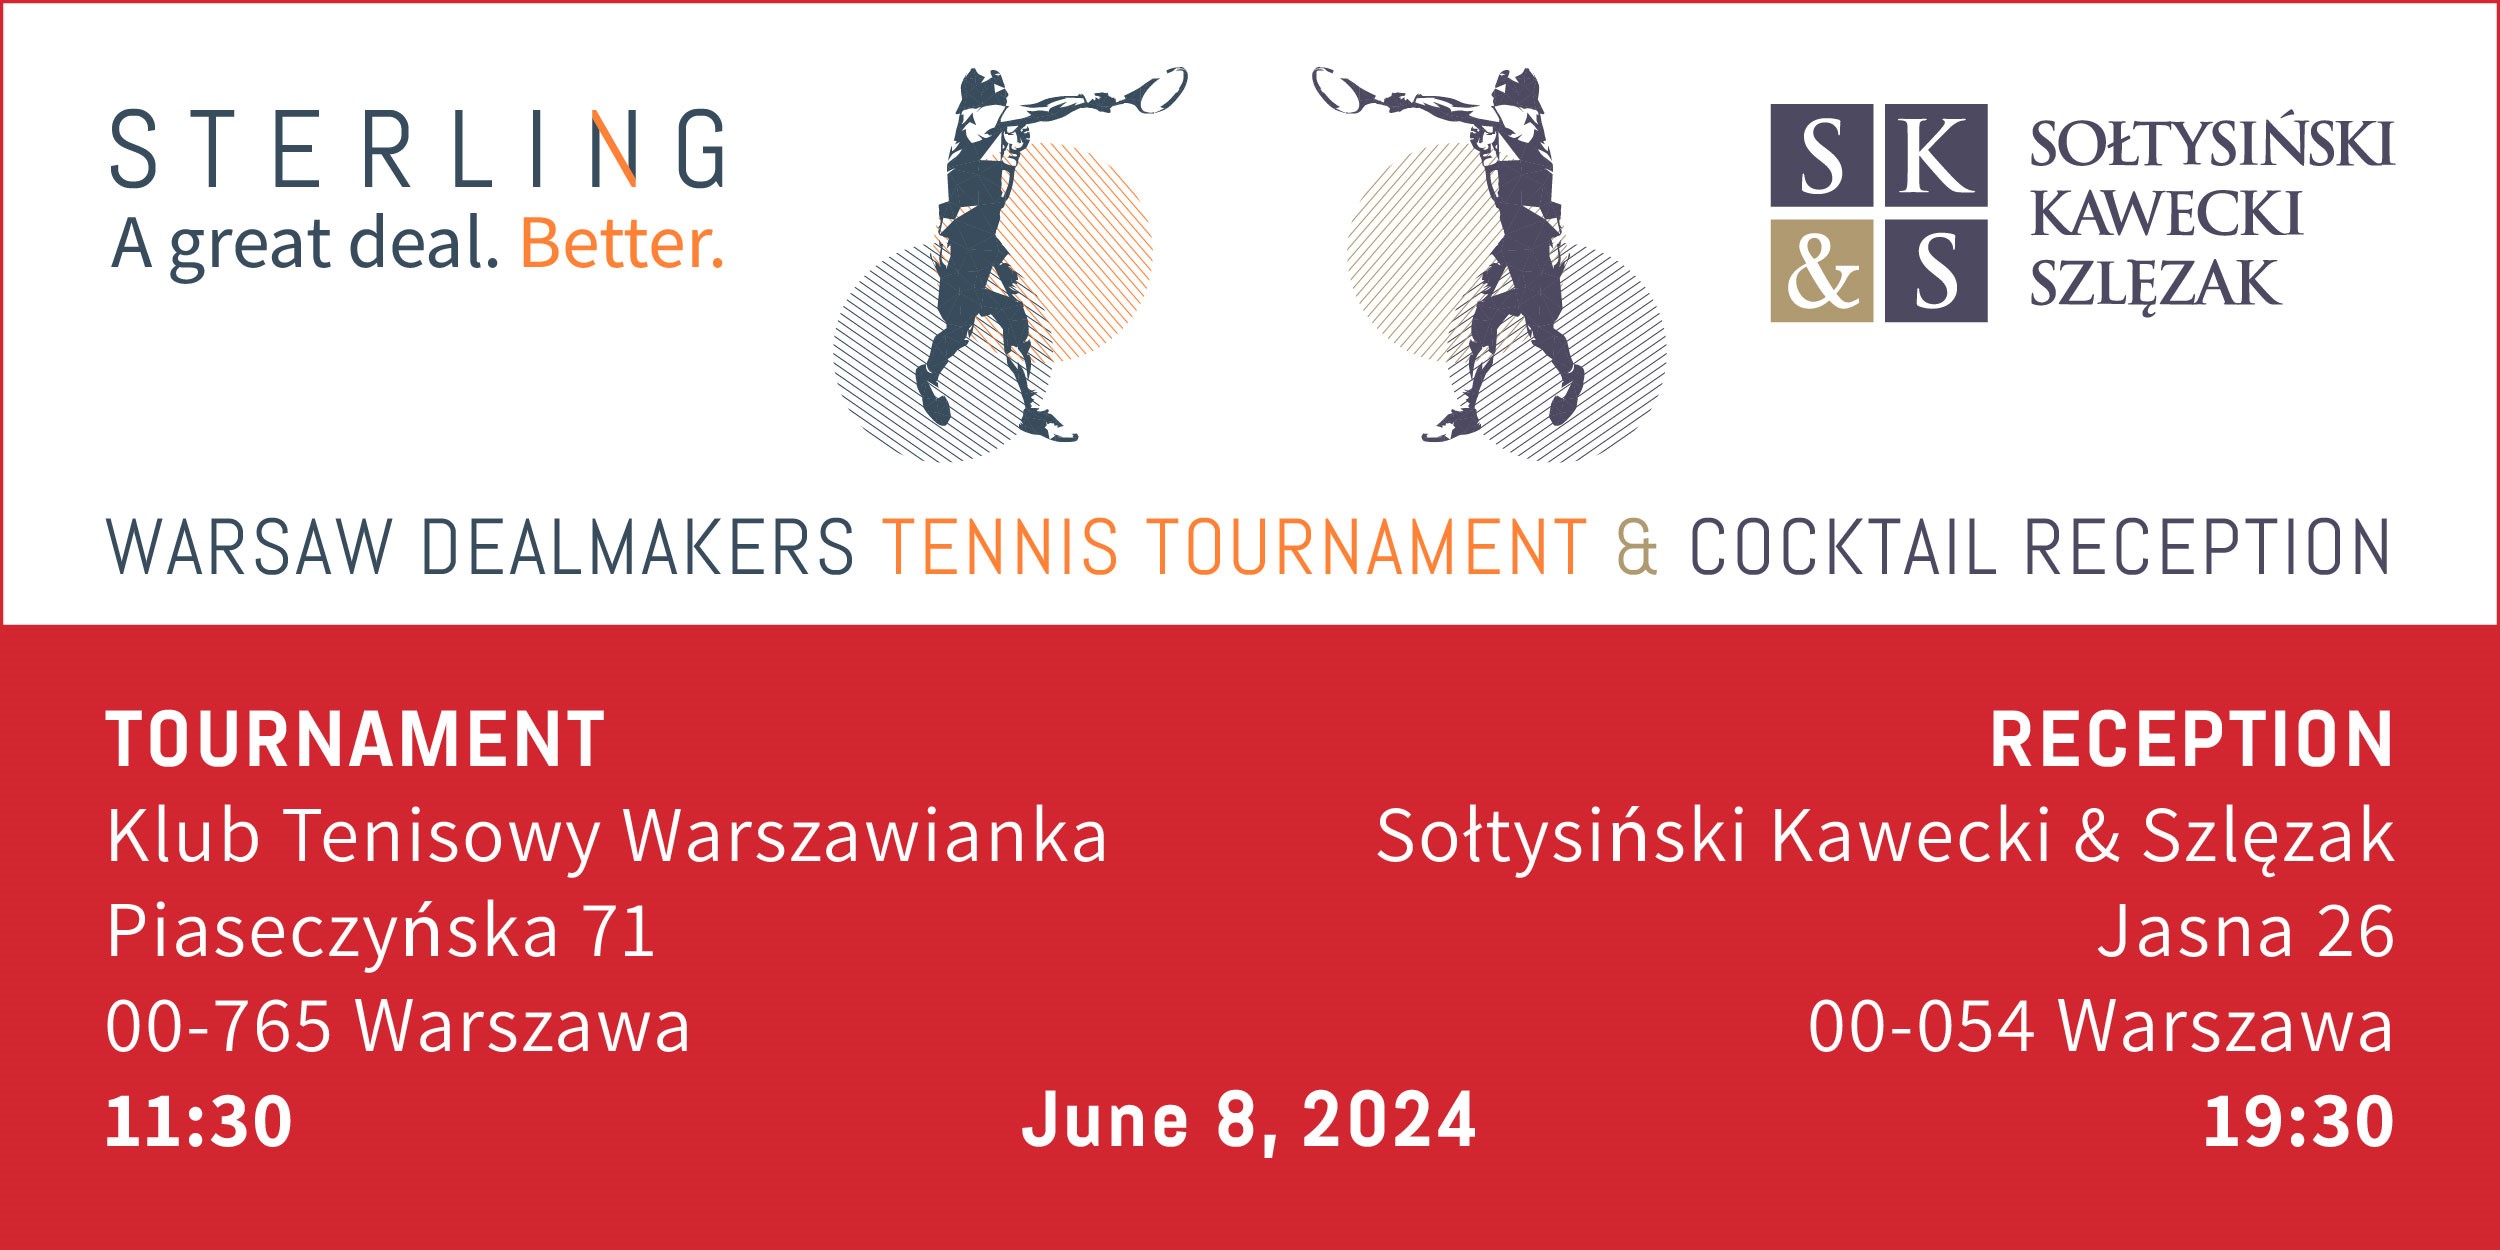 Sołtysiński Kawecki & Szlęzak and Sterling Technology Warsaw Dealmakers | Tennis Tournament | WARSAW